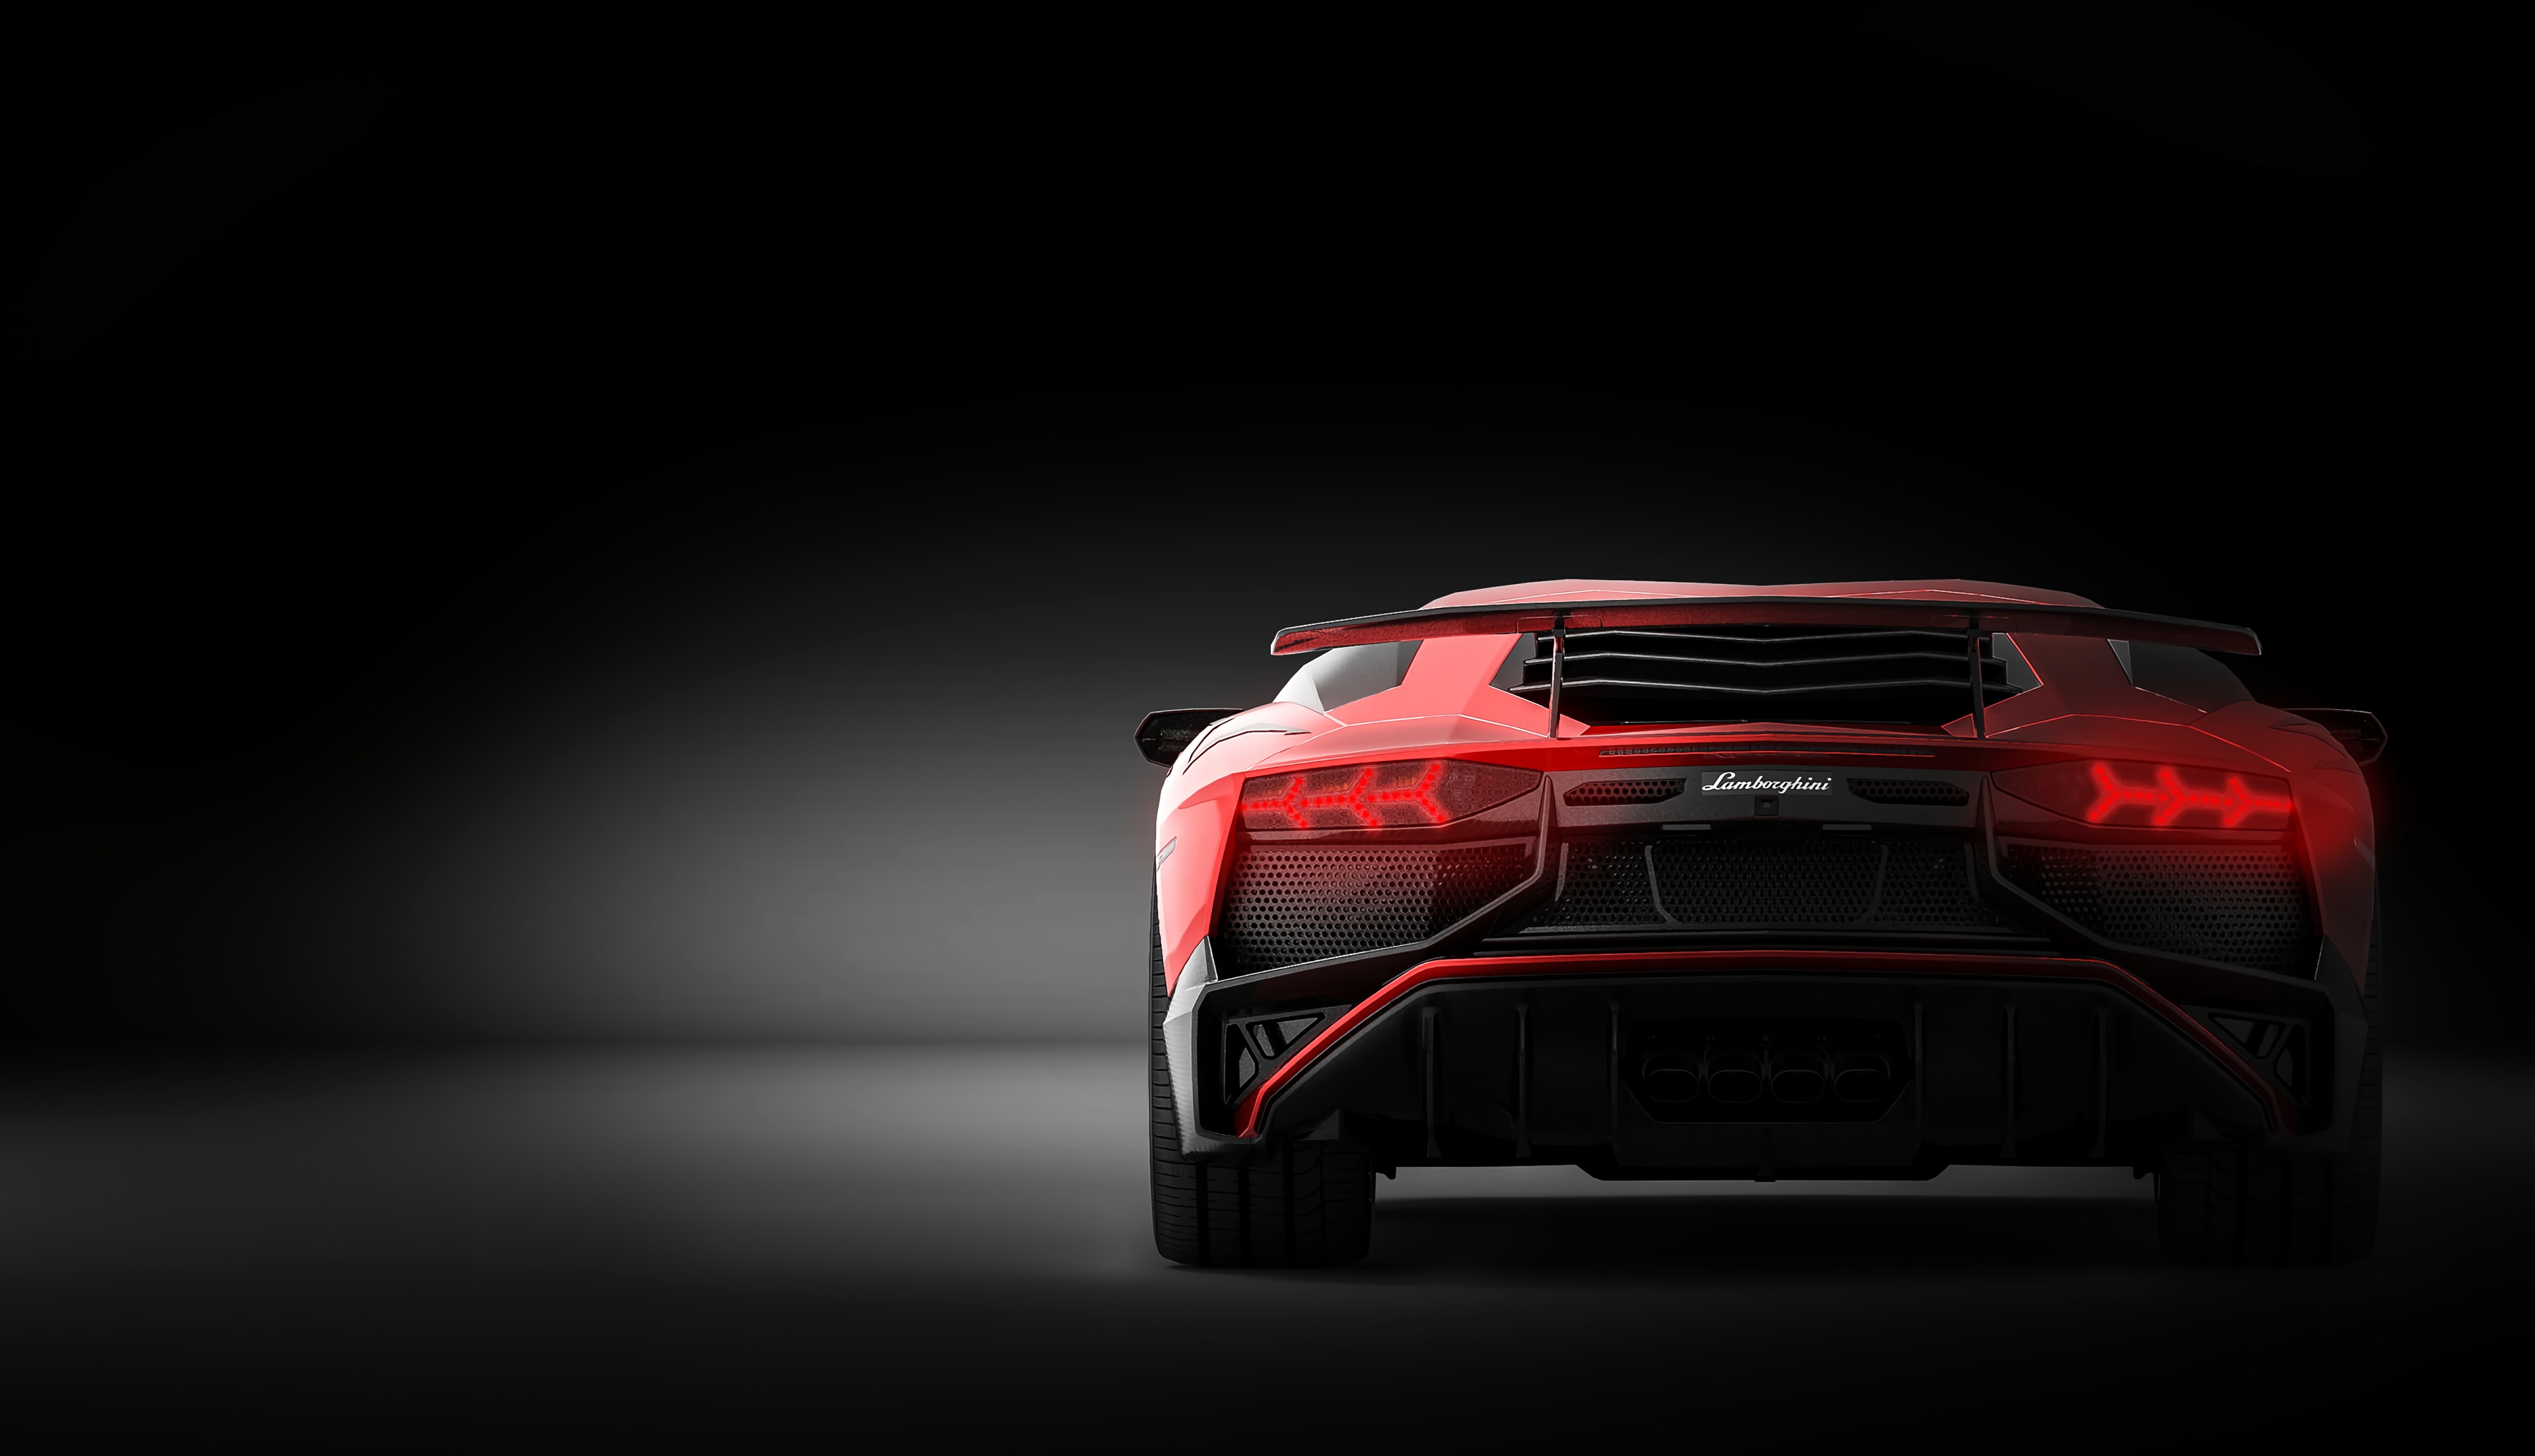 Descargar fondos de escritorio de Lamborghini Aventador HD